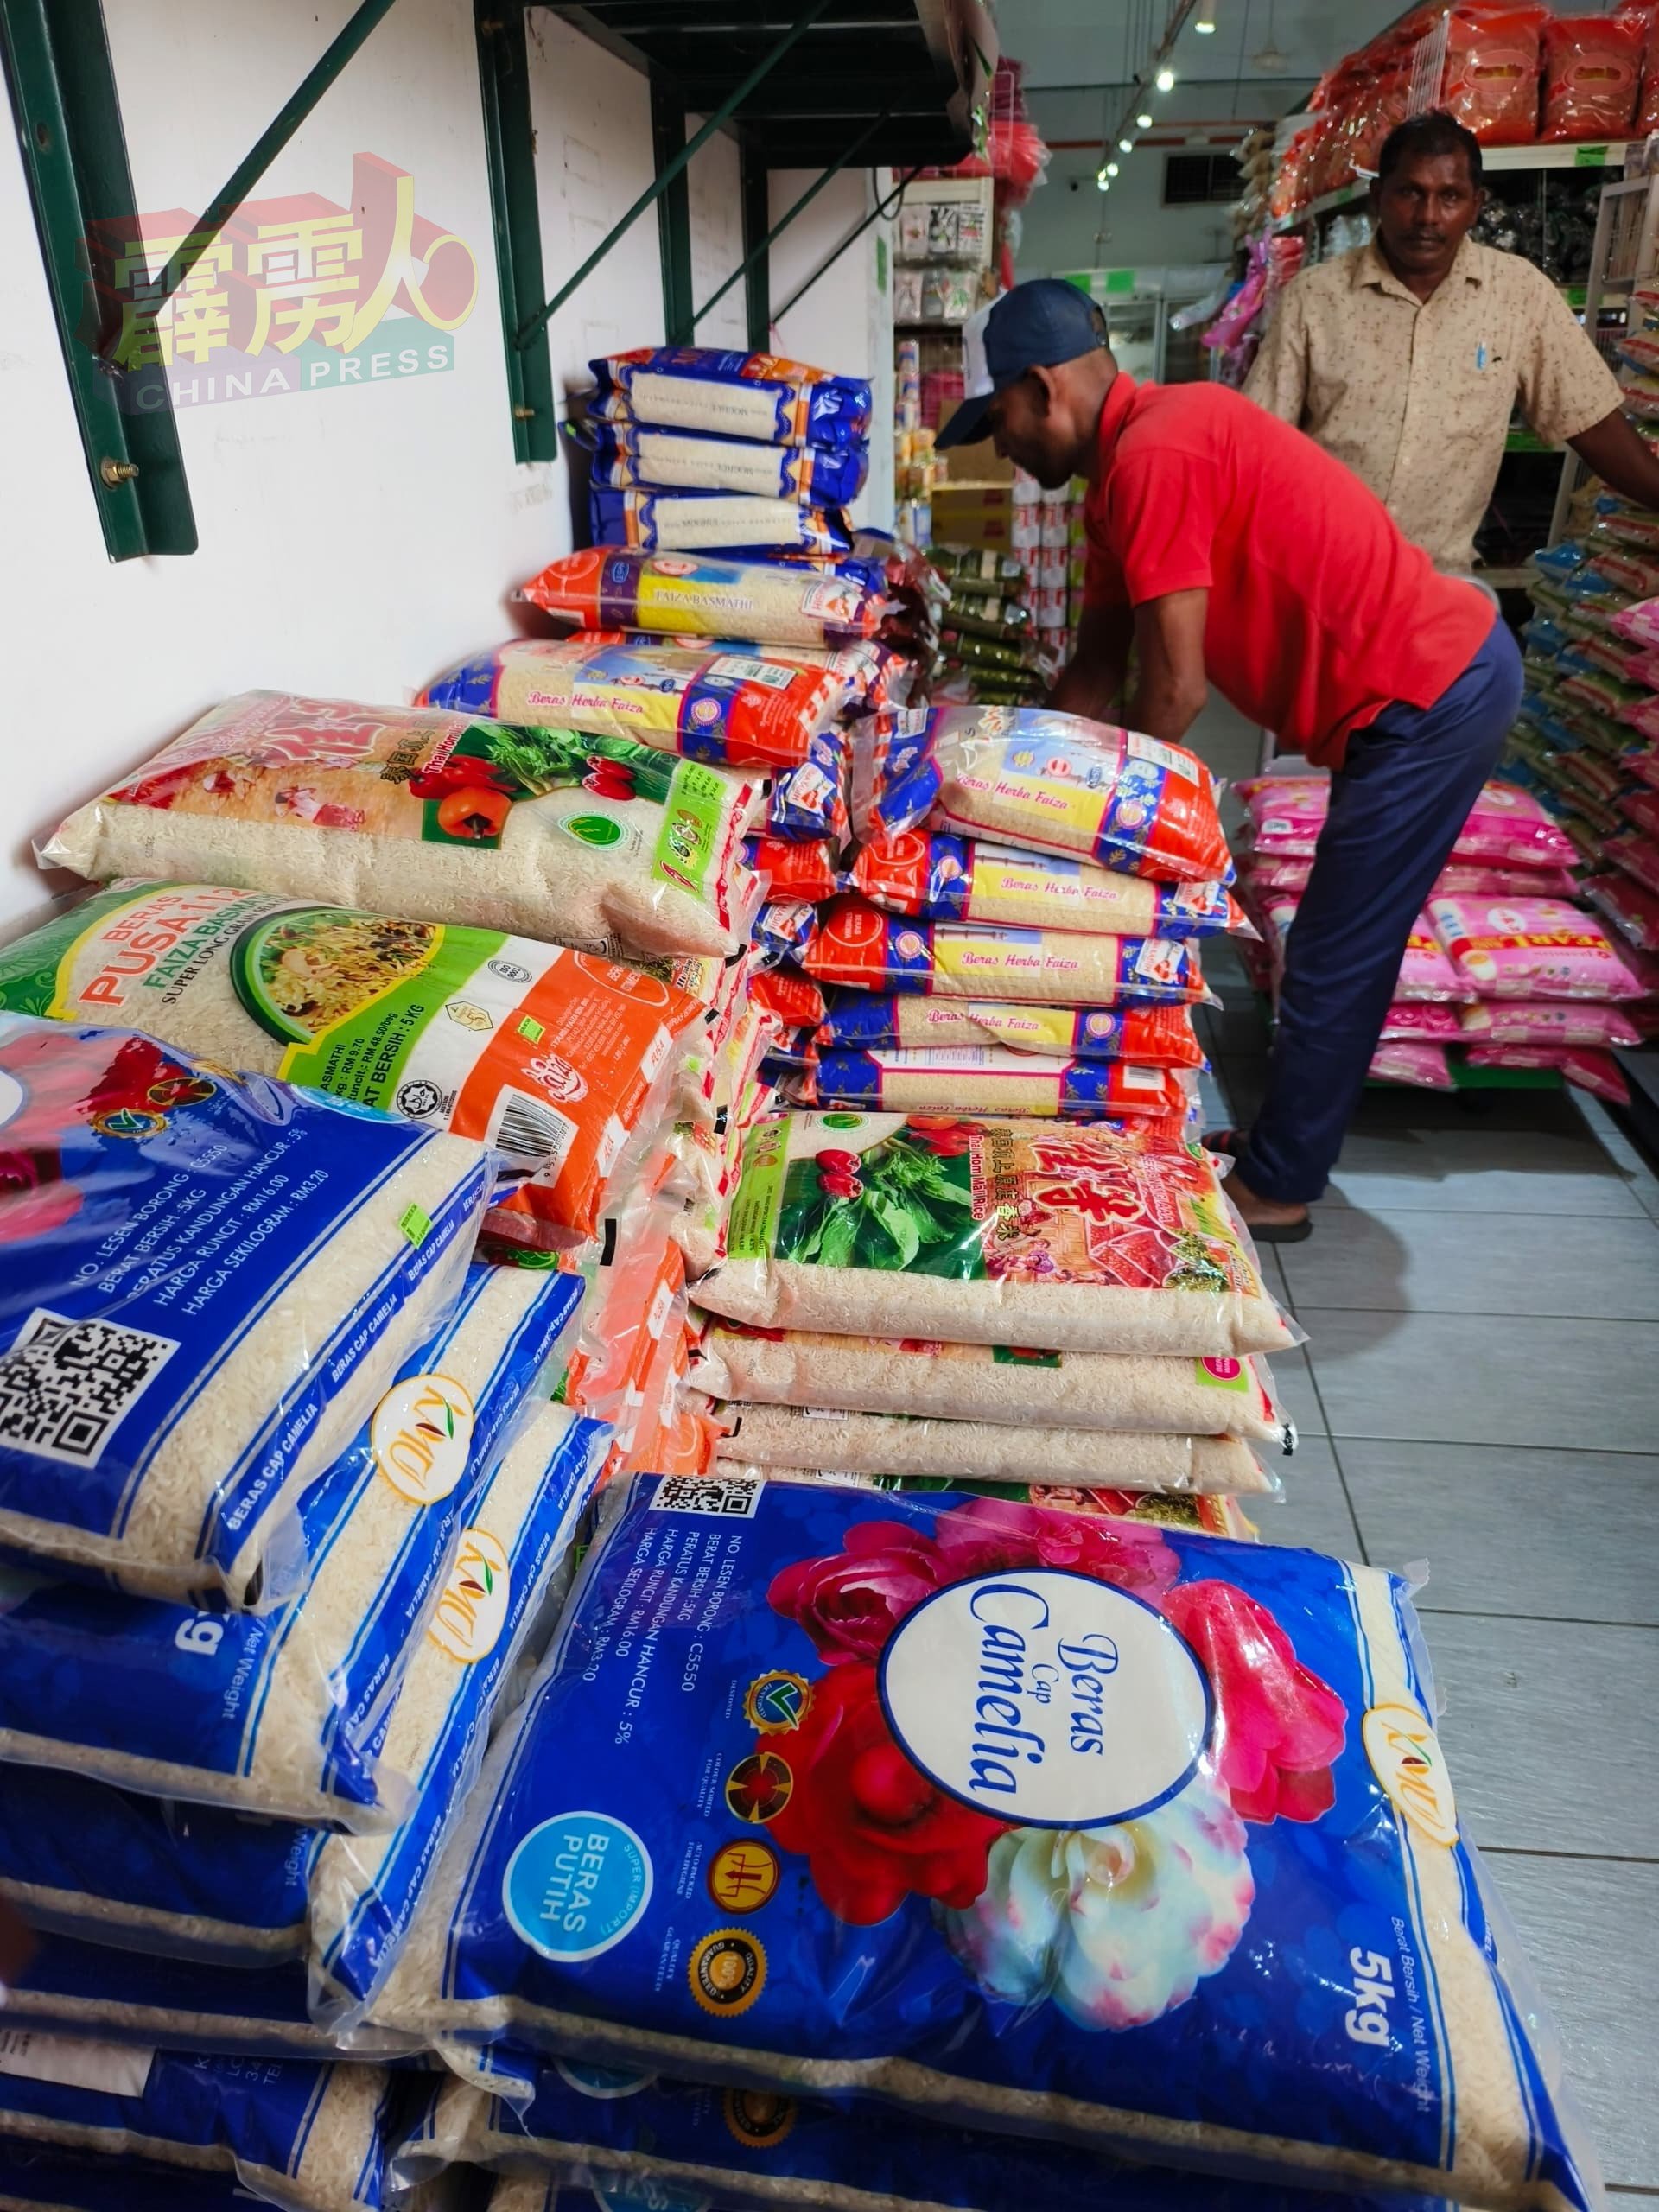 江沙的粮食批发商的进口白米有许多贮货，仍以旧价出售，非常有良心。